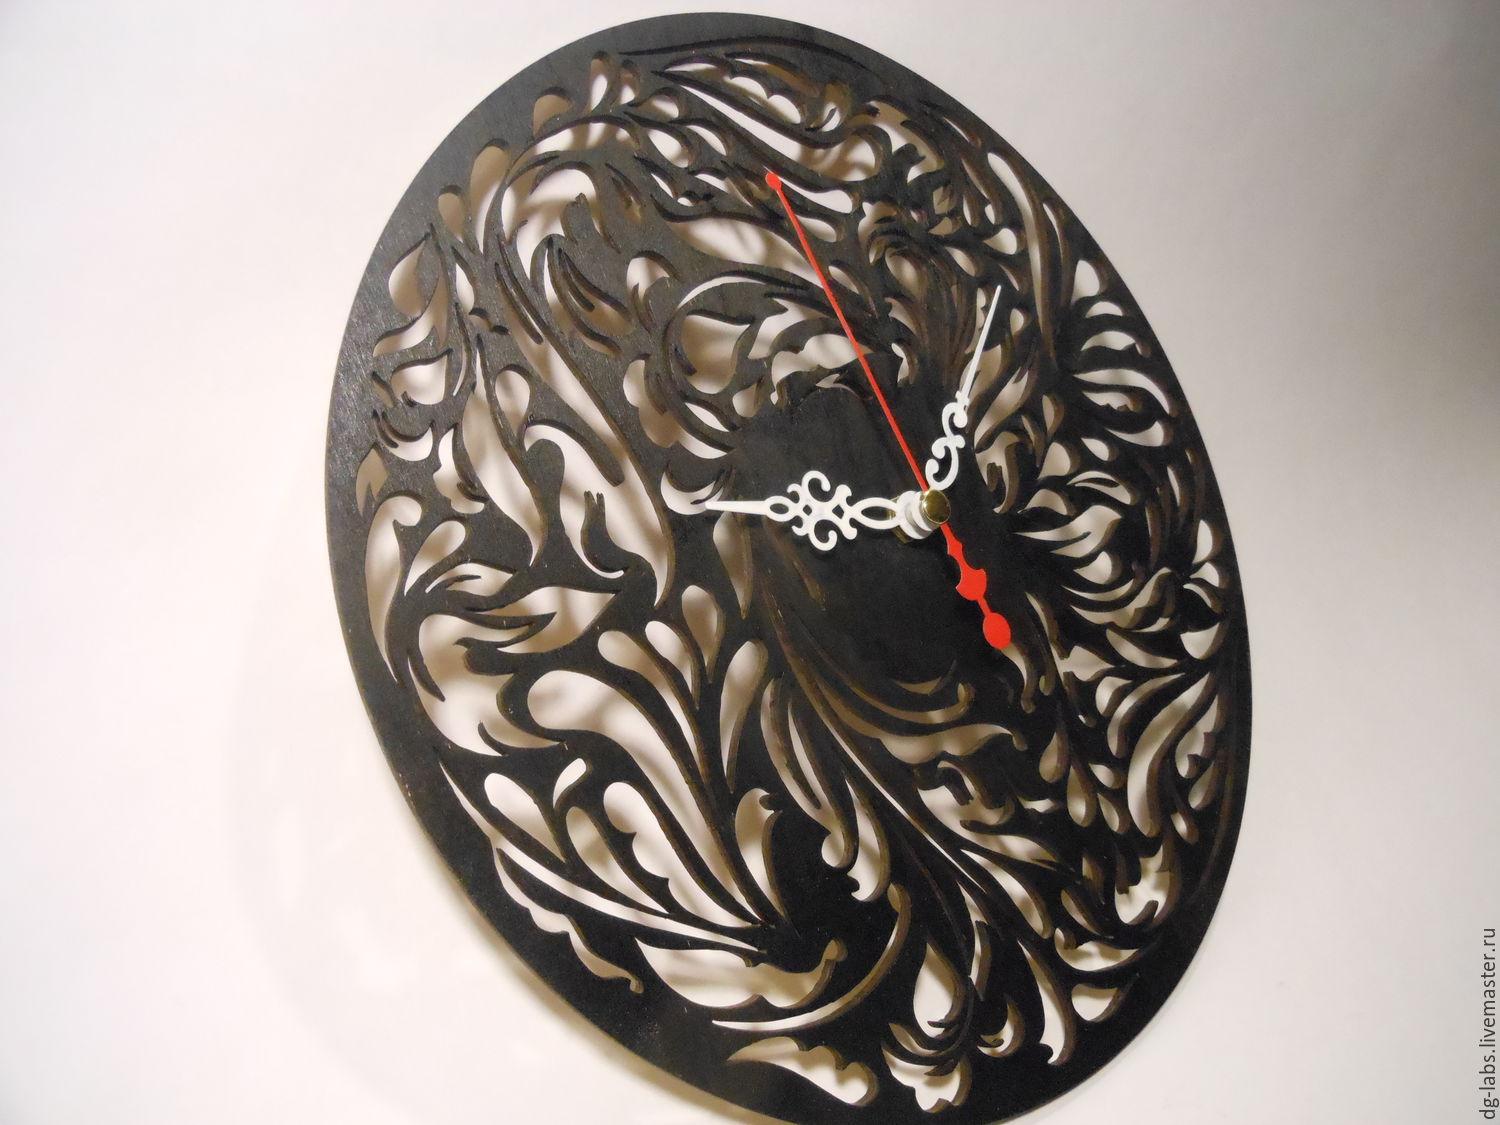 Оригинальные настенные часы – красивый аксессуар с глубоким смыслом  